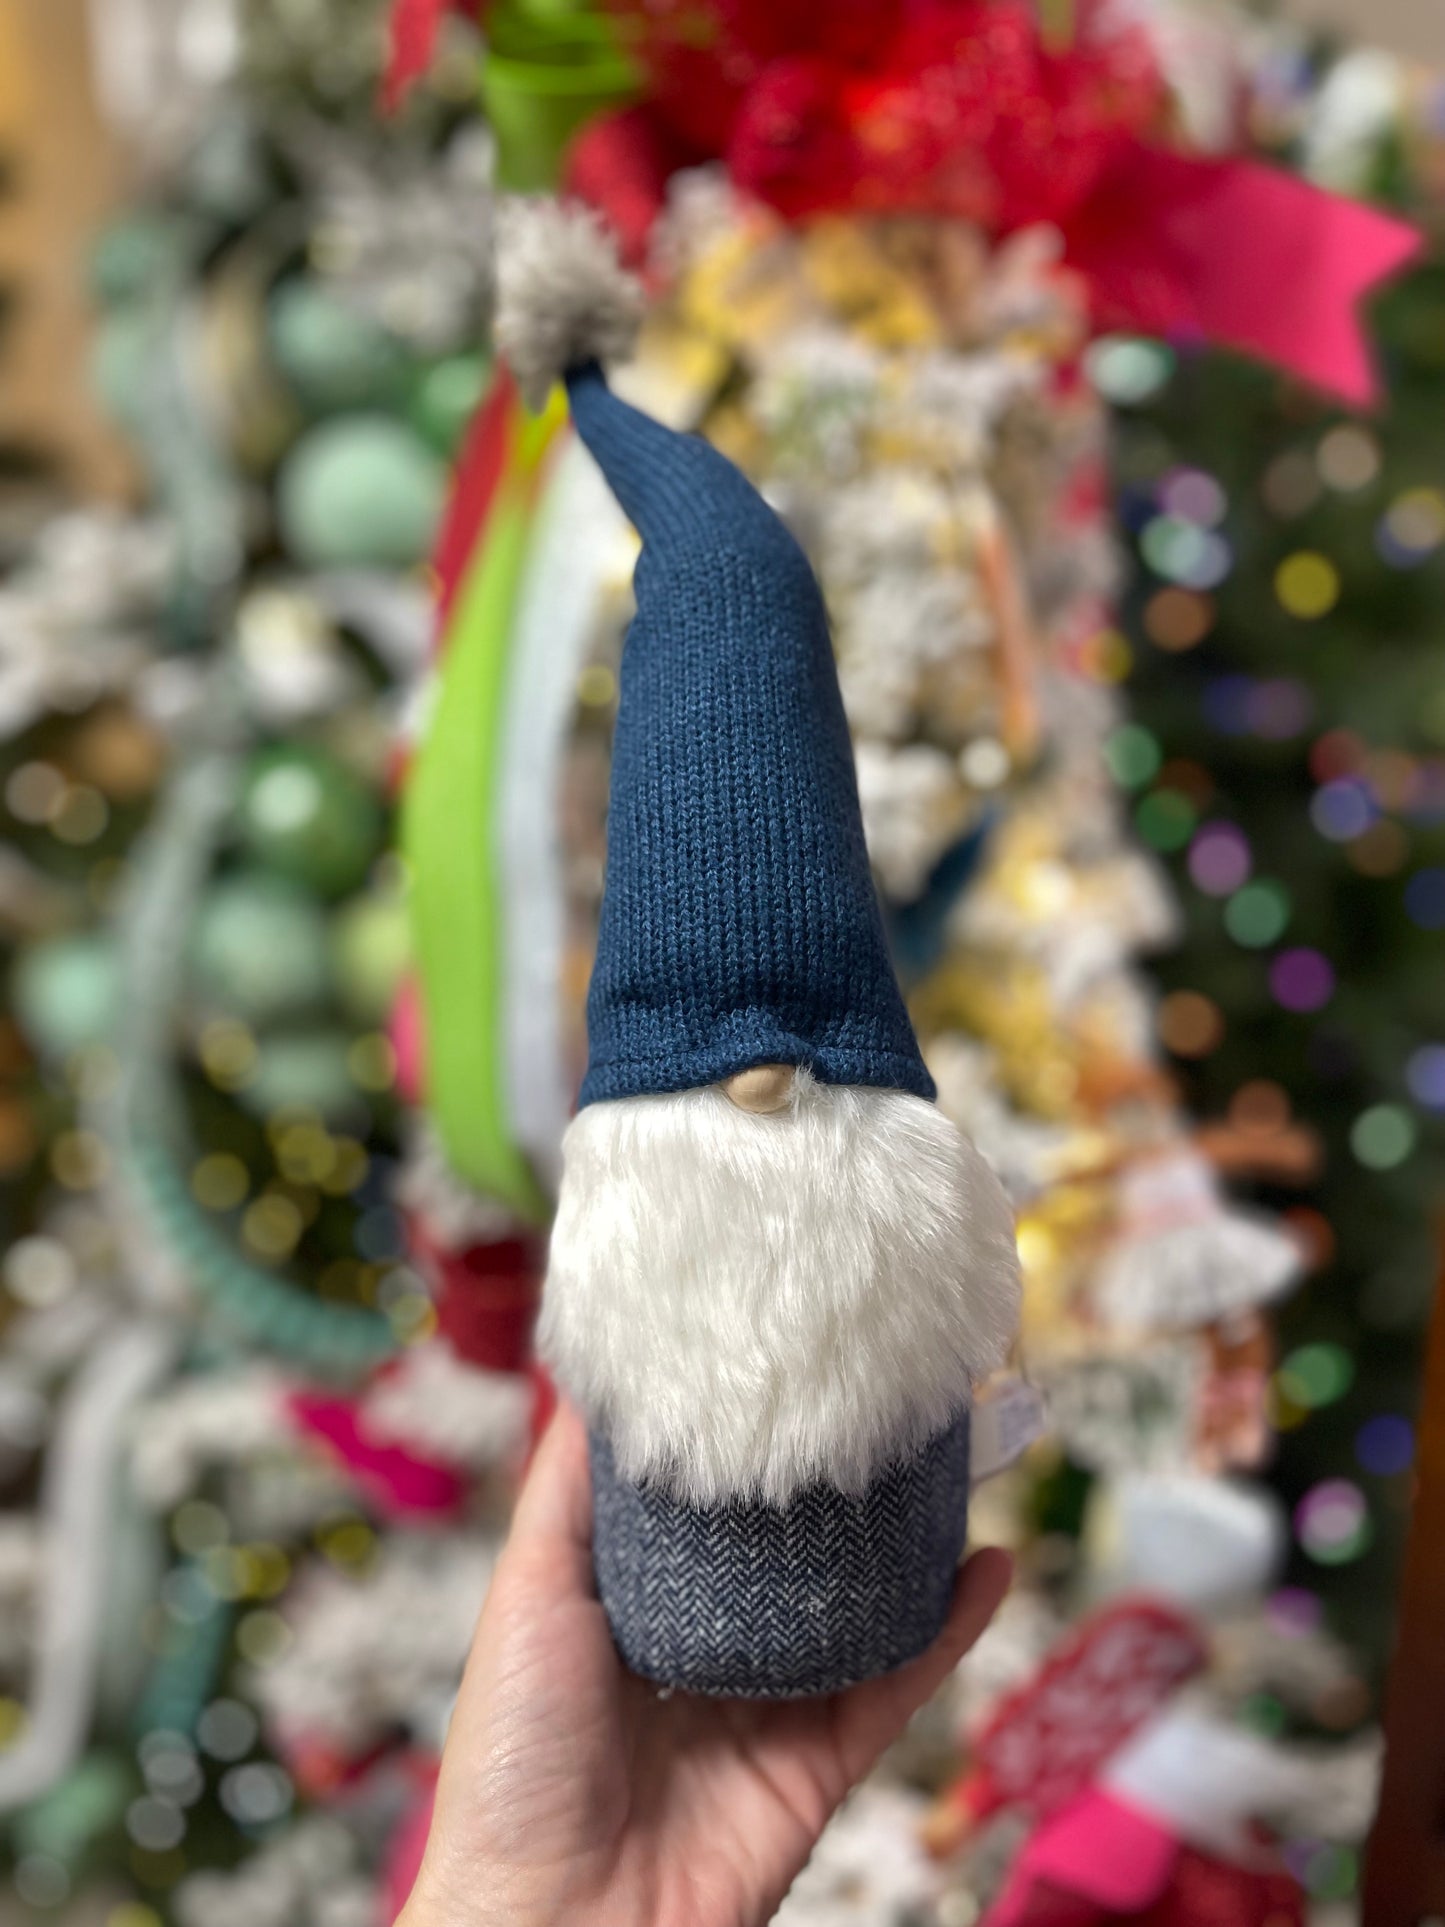 Wondershop Navy Stitched Gnome